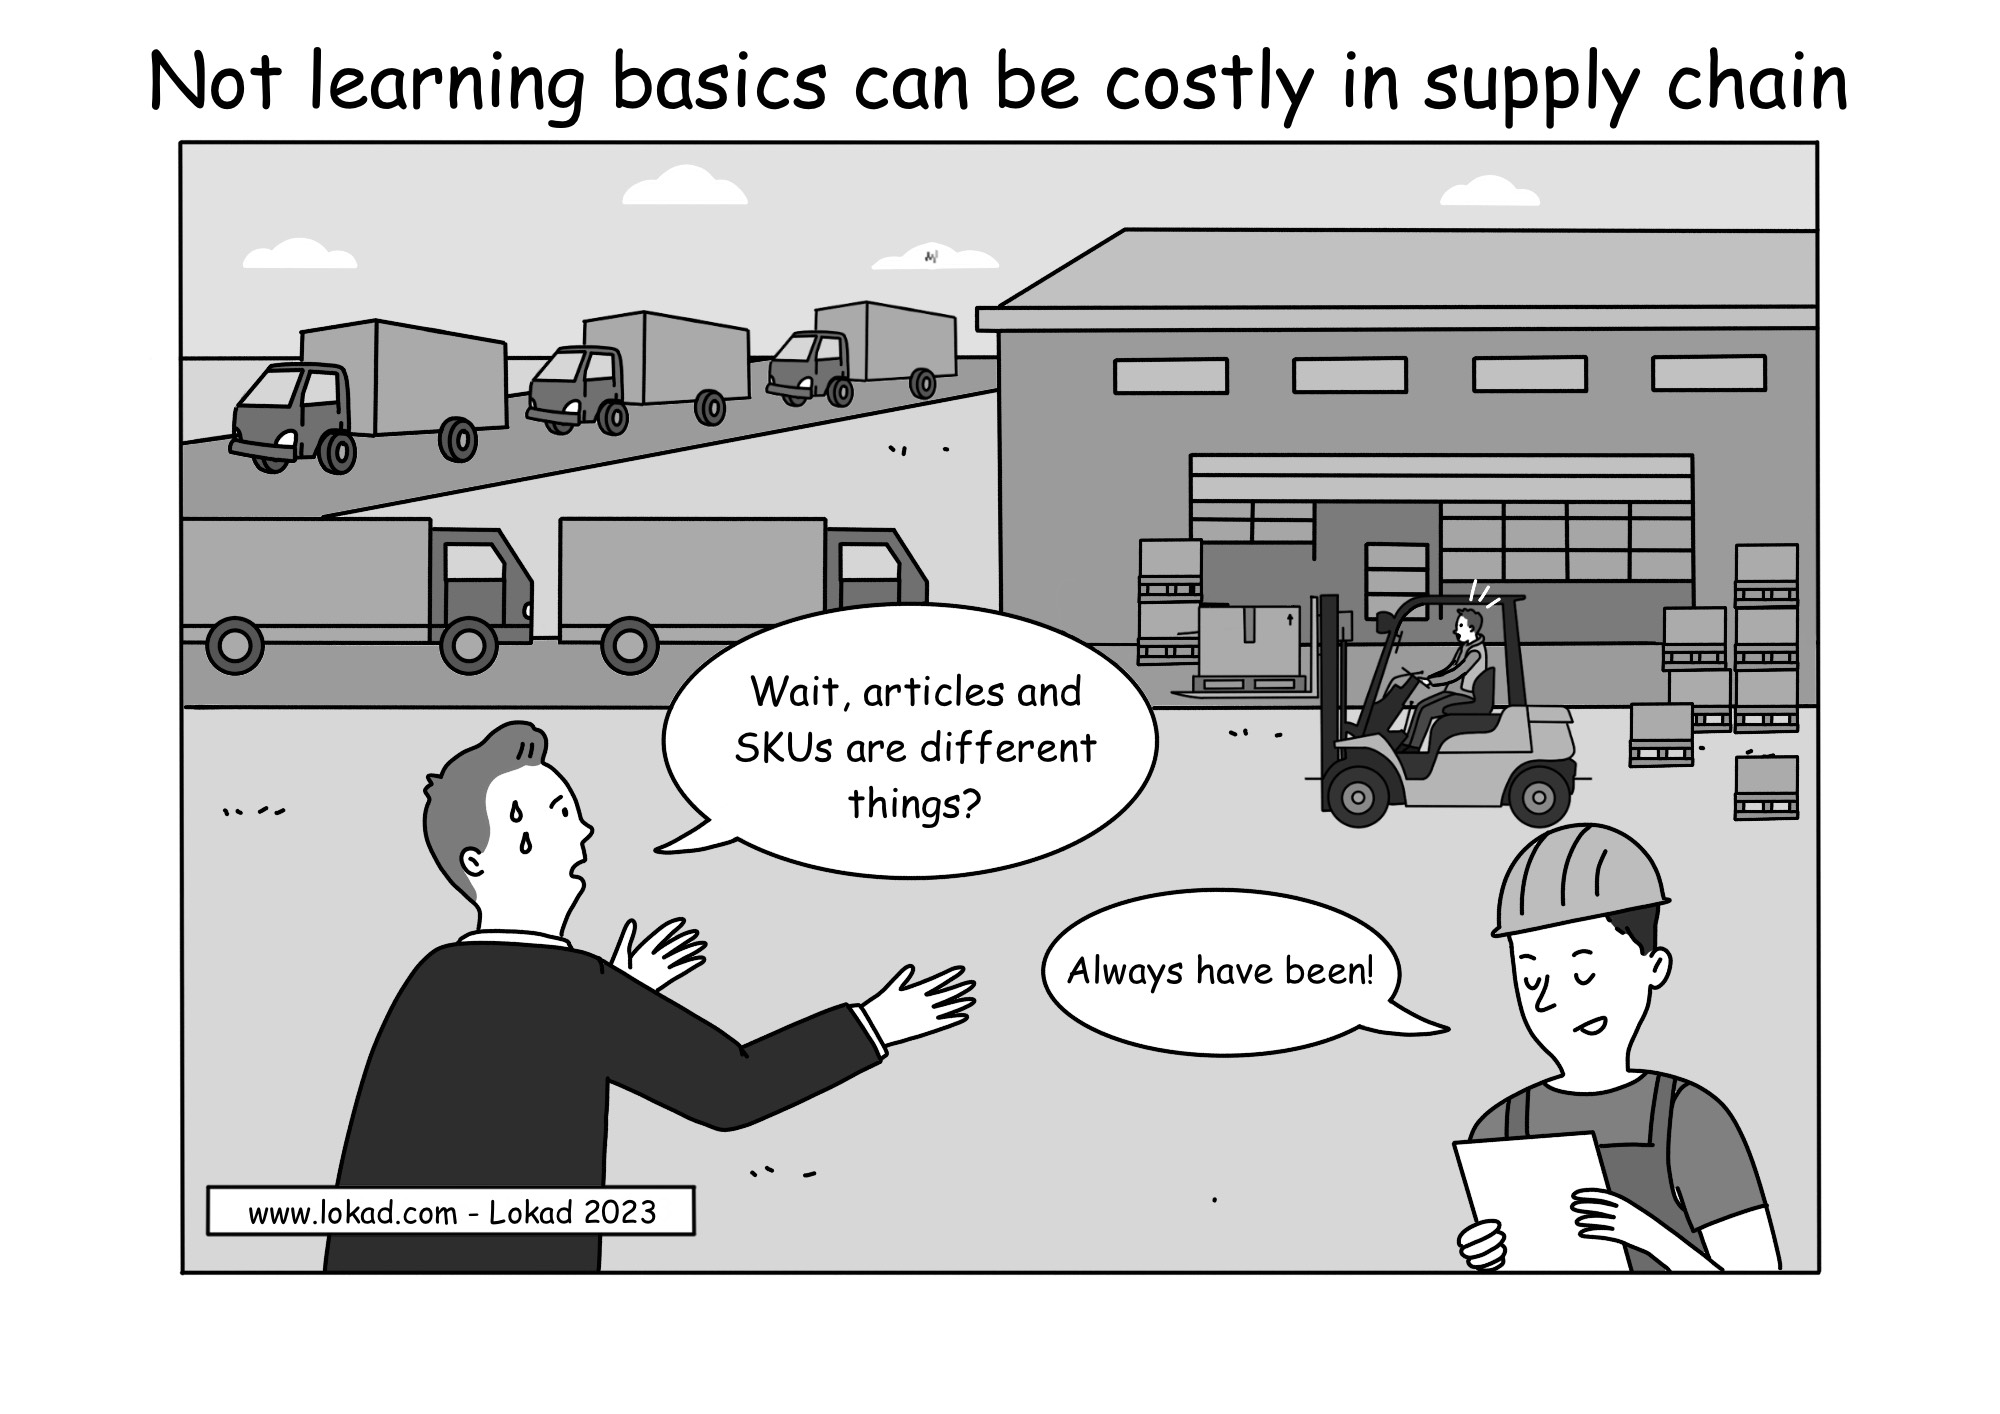 Ne pas apprendre les bases peut coûter cher dans la supply chain